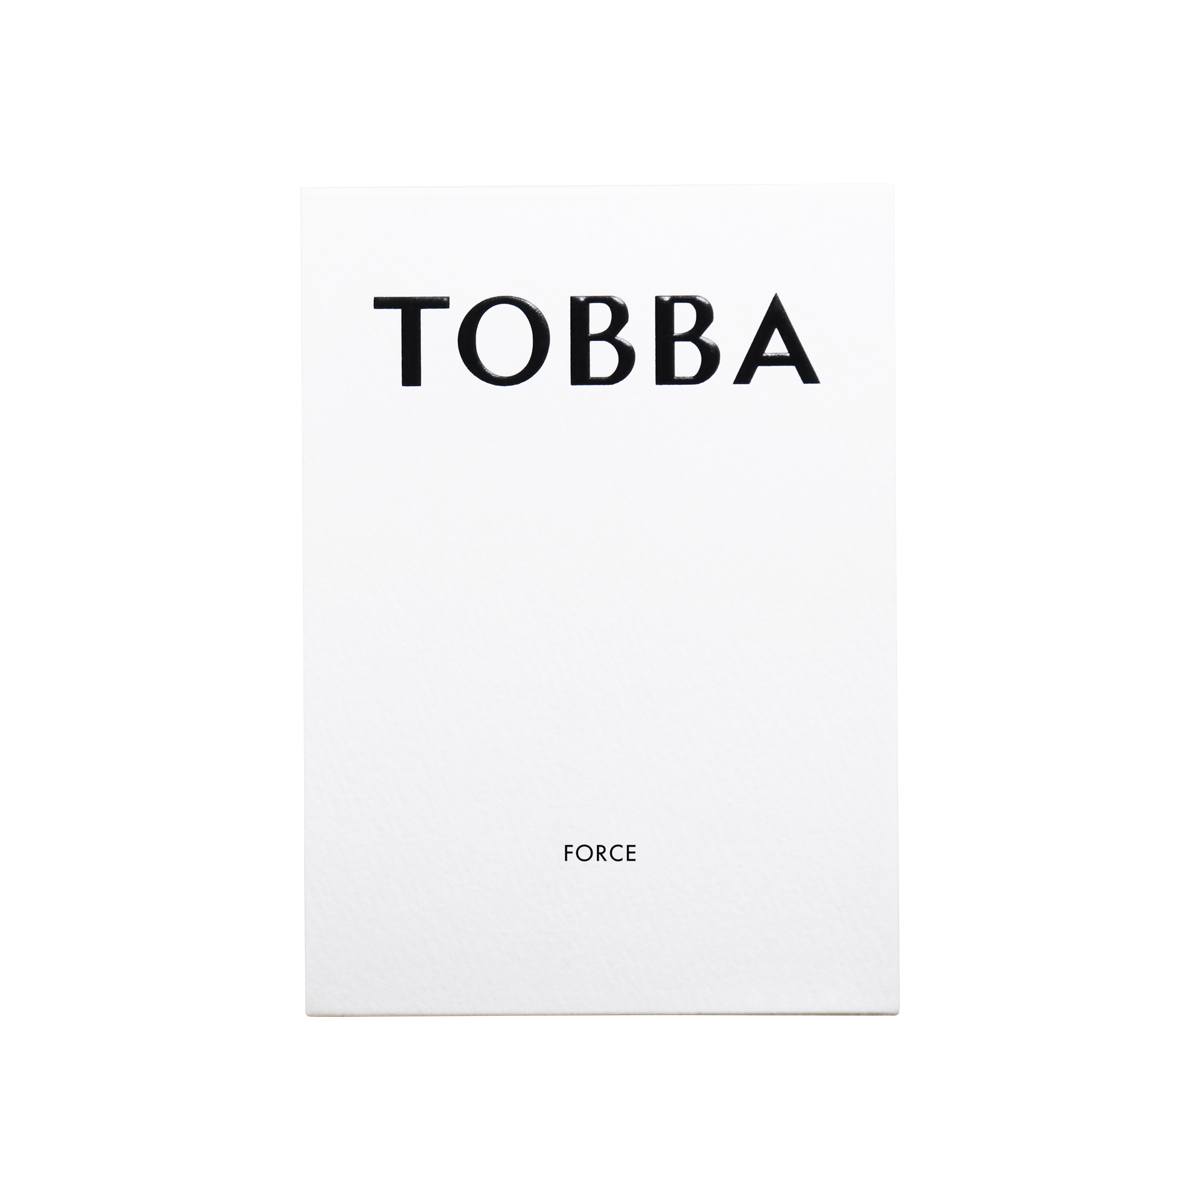 TOBBA - Force Eau de Parfum